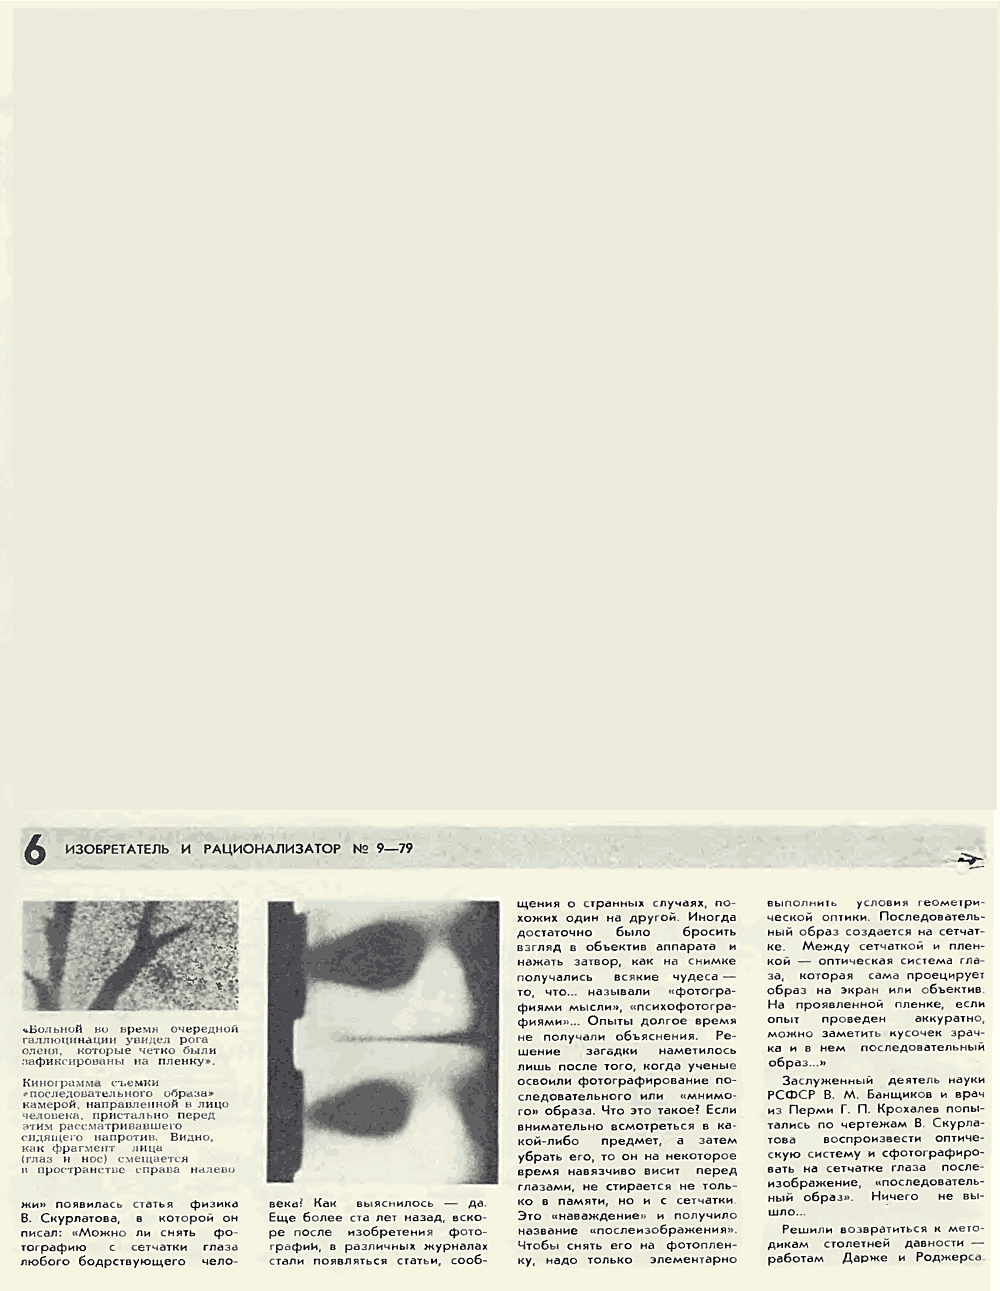 Подсознание на фотобумаге. В. Богатырев. Изобретатель и рационализатор, 1979, №9, с.4-7,24-25. Фотокопия №3